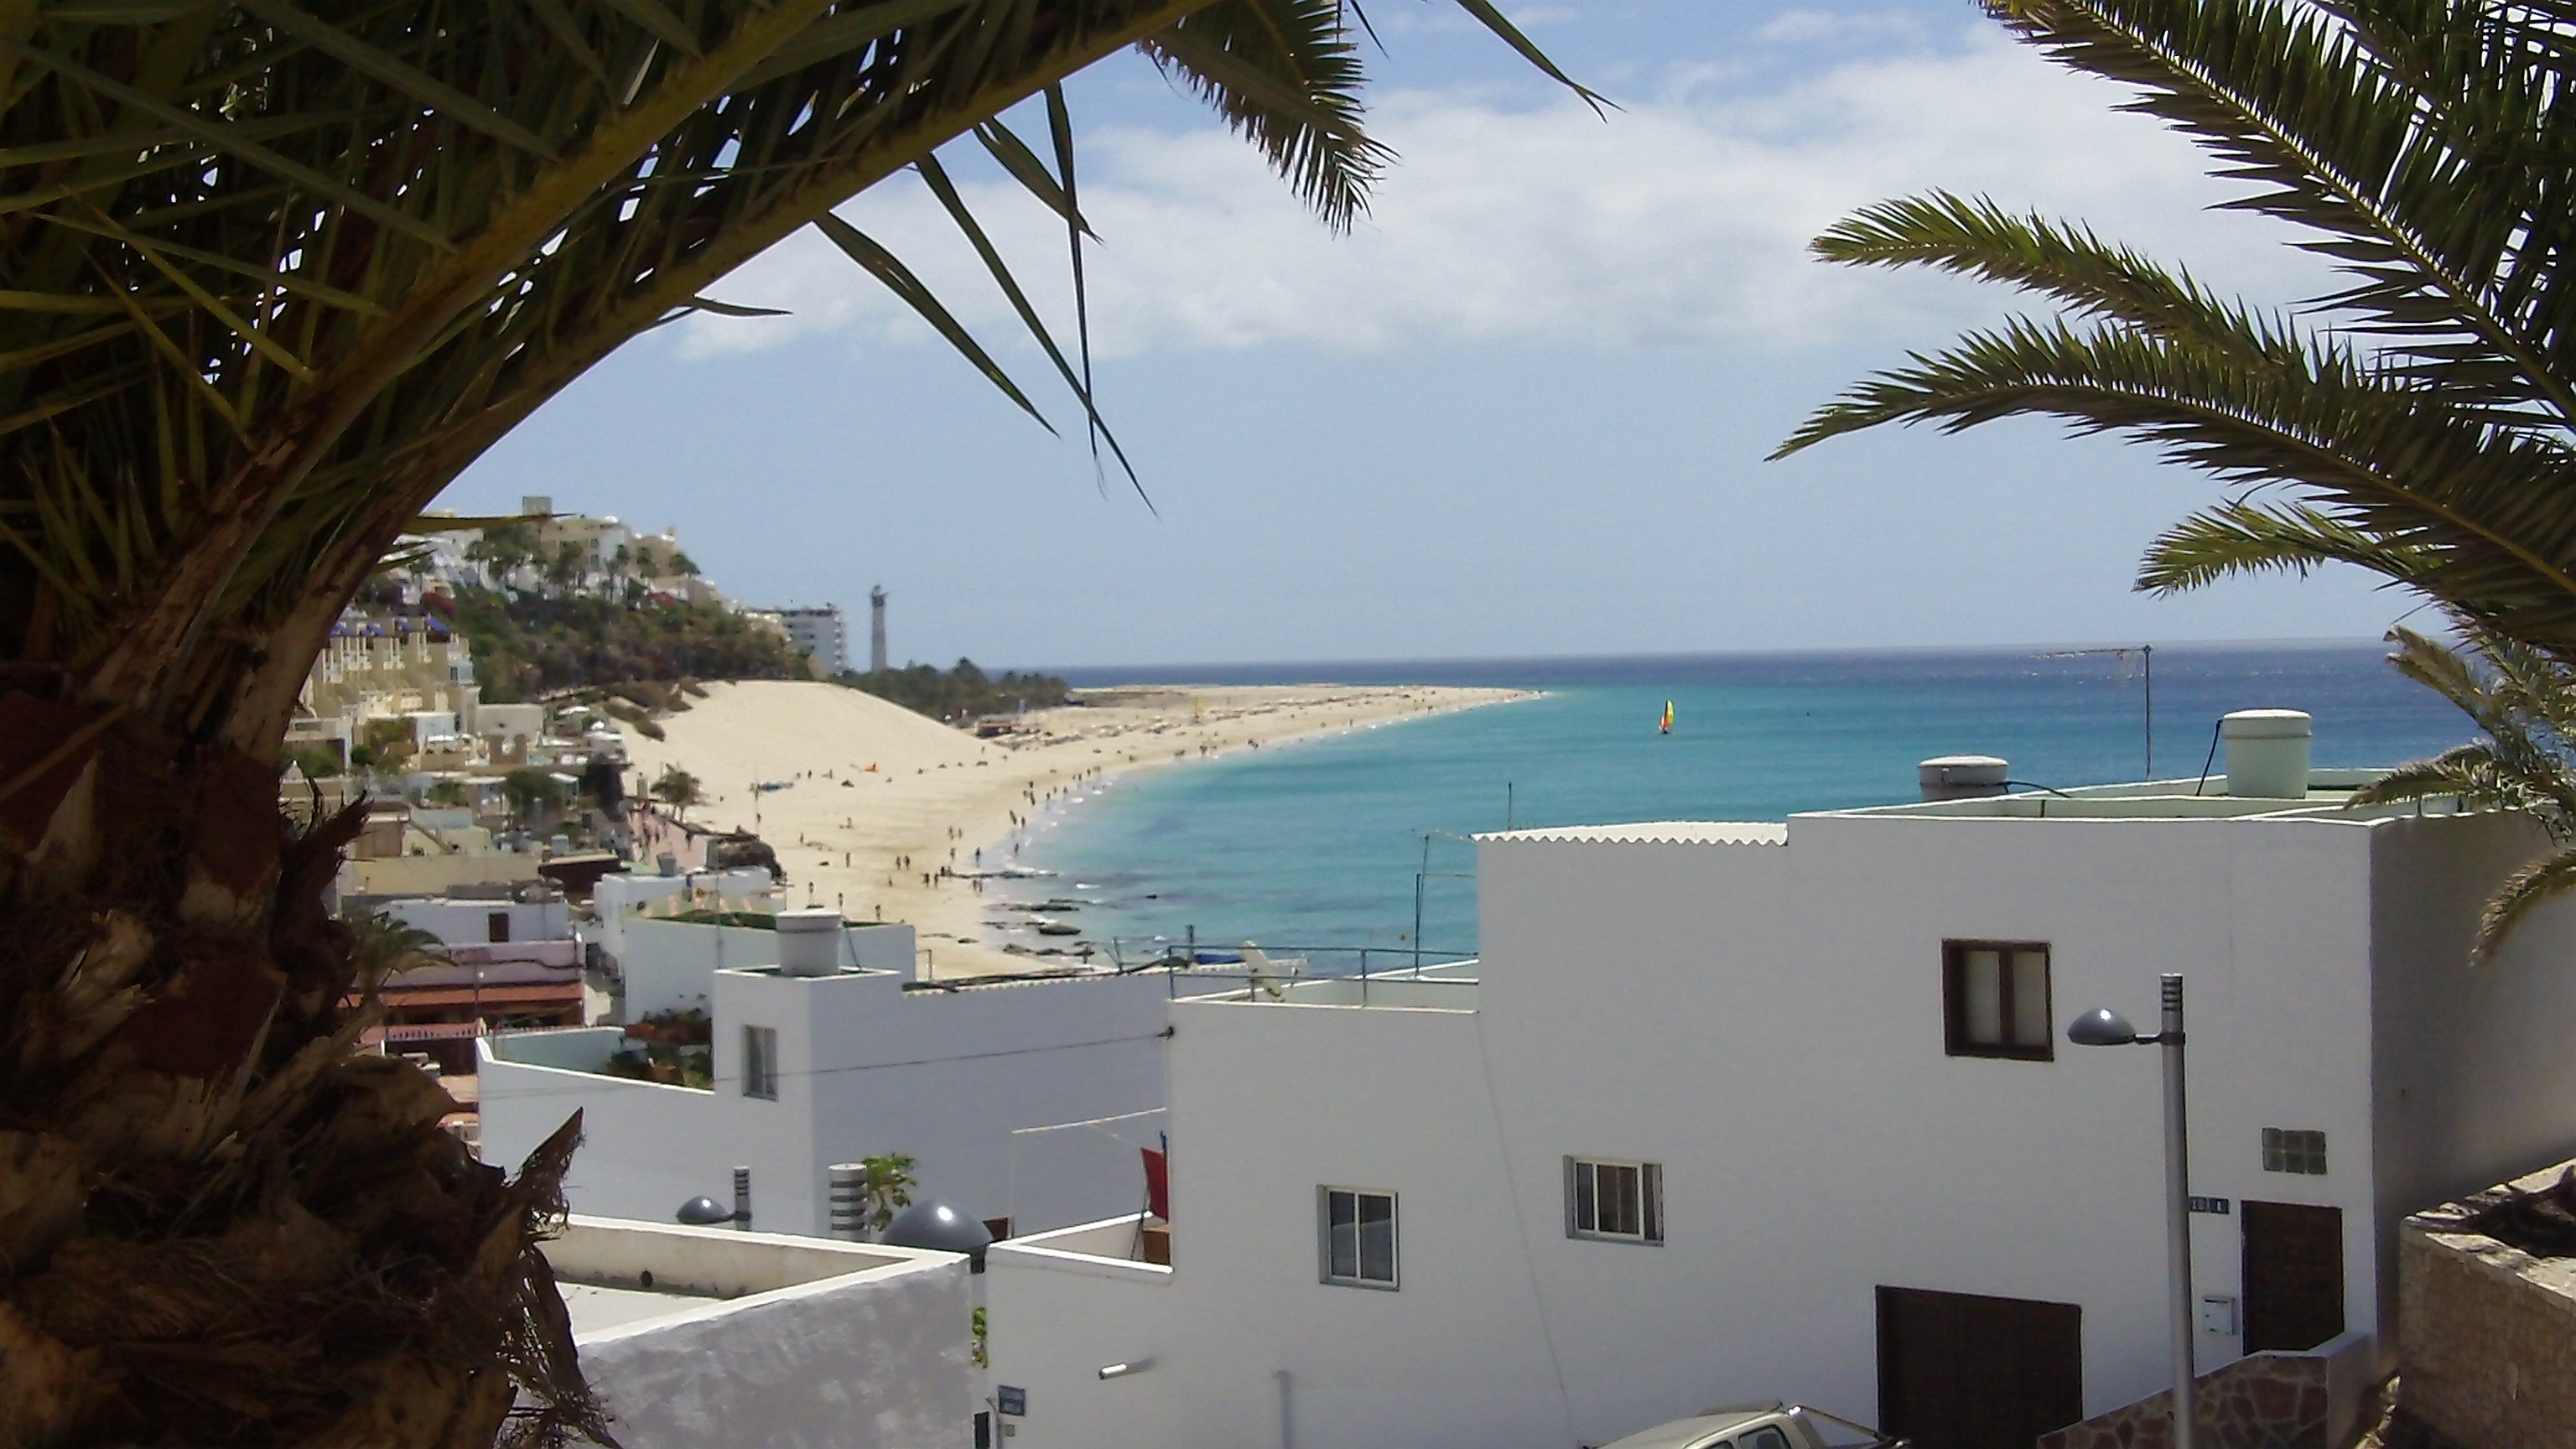 Pullmantur Cruises bietet an vier Terminen einwöchige Kreuzfahrten um die Kanaren ab/bis Gran Canaria bereits ab 439 € pro Person